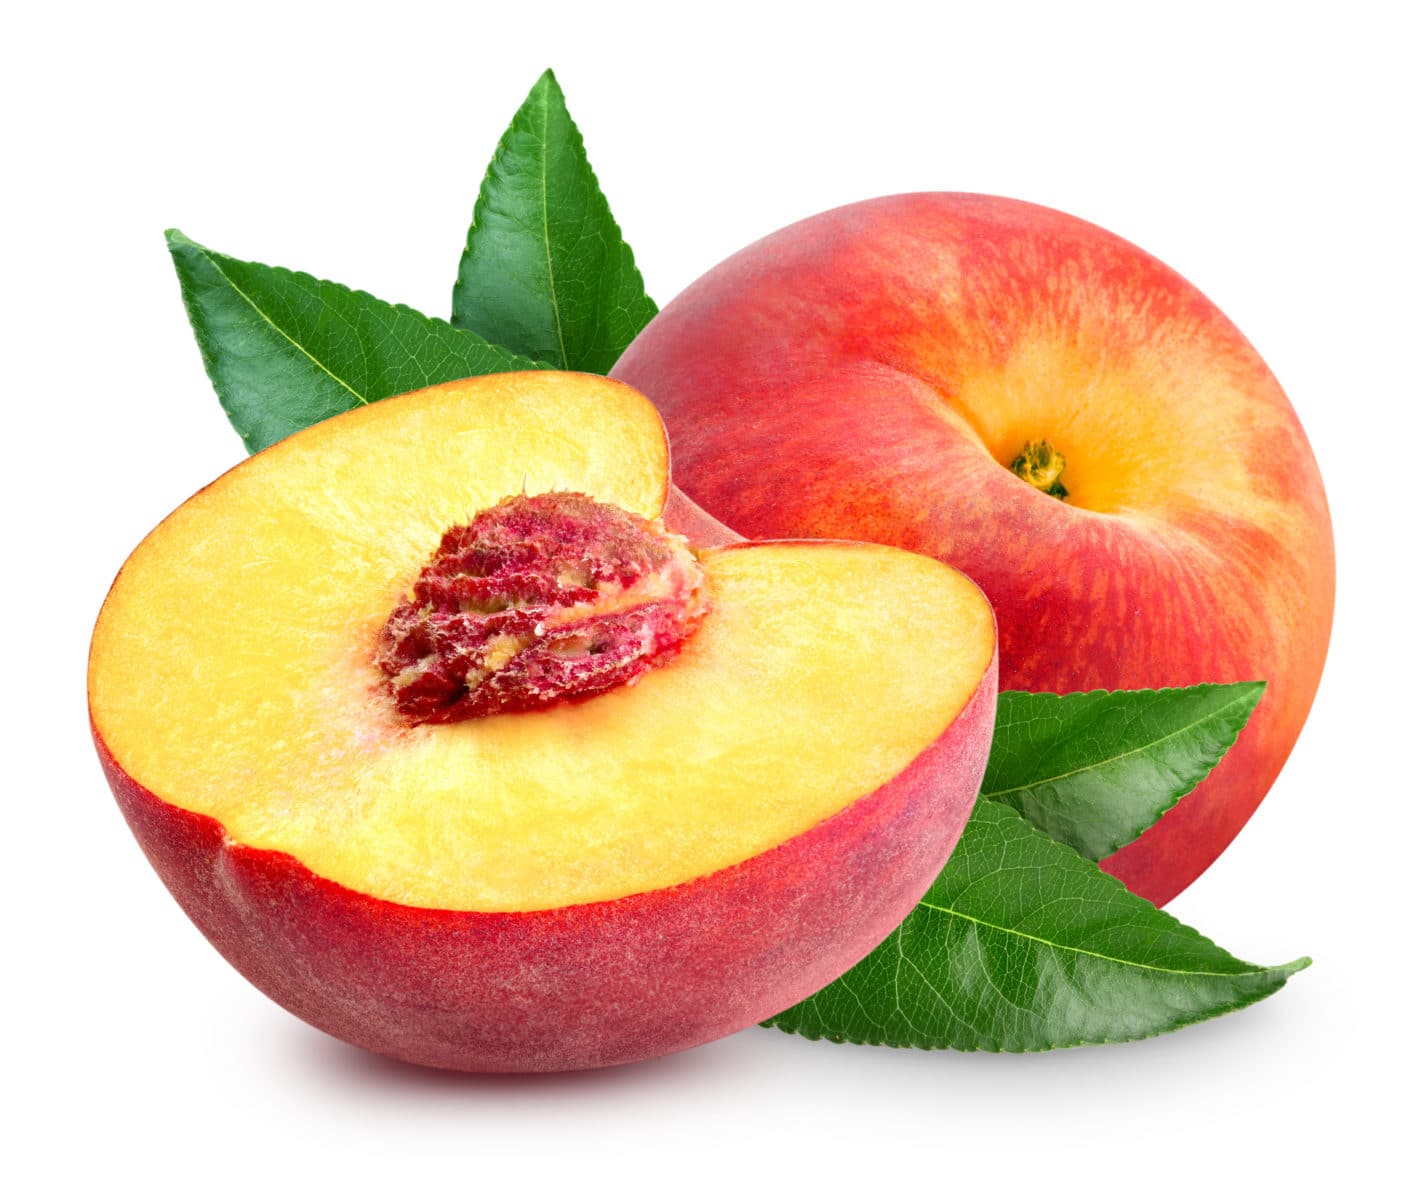 Peach kernel oil, peach fruit extract